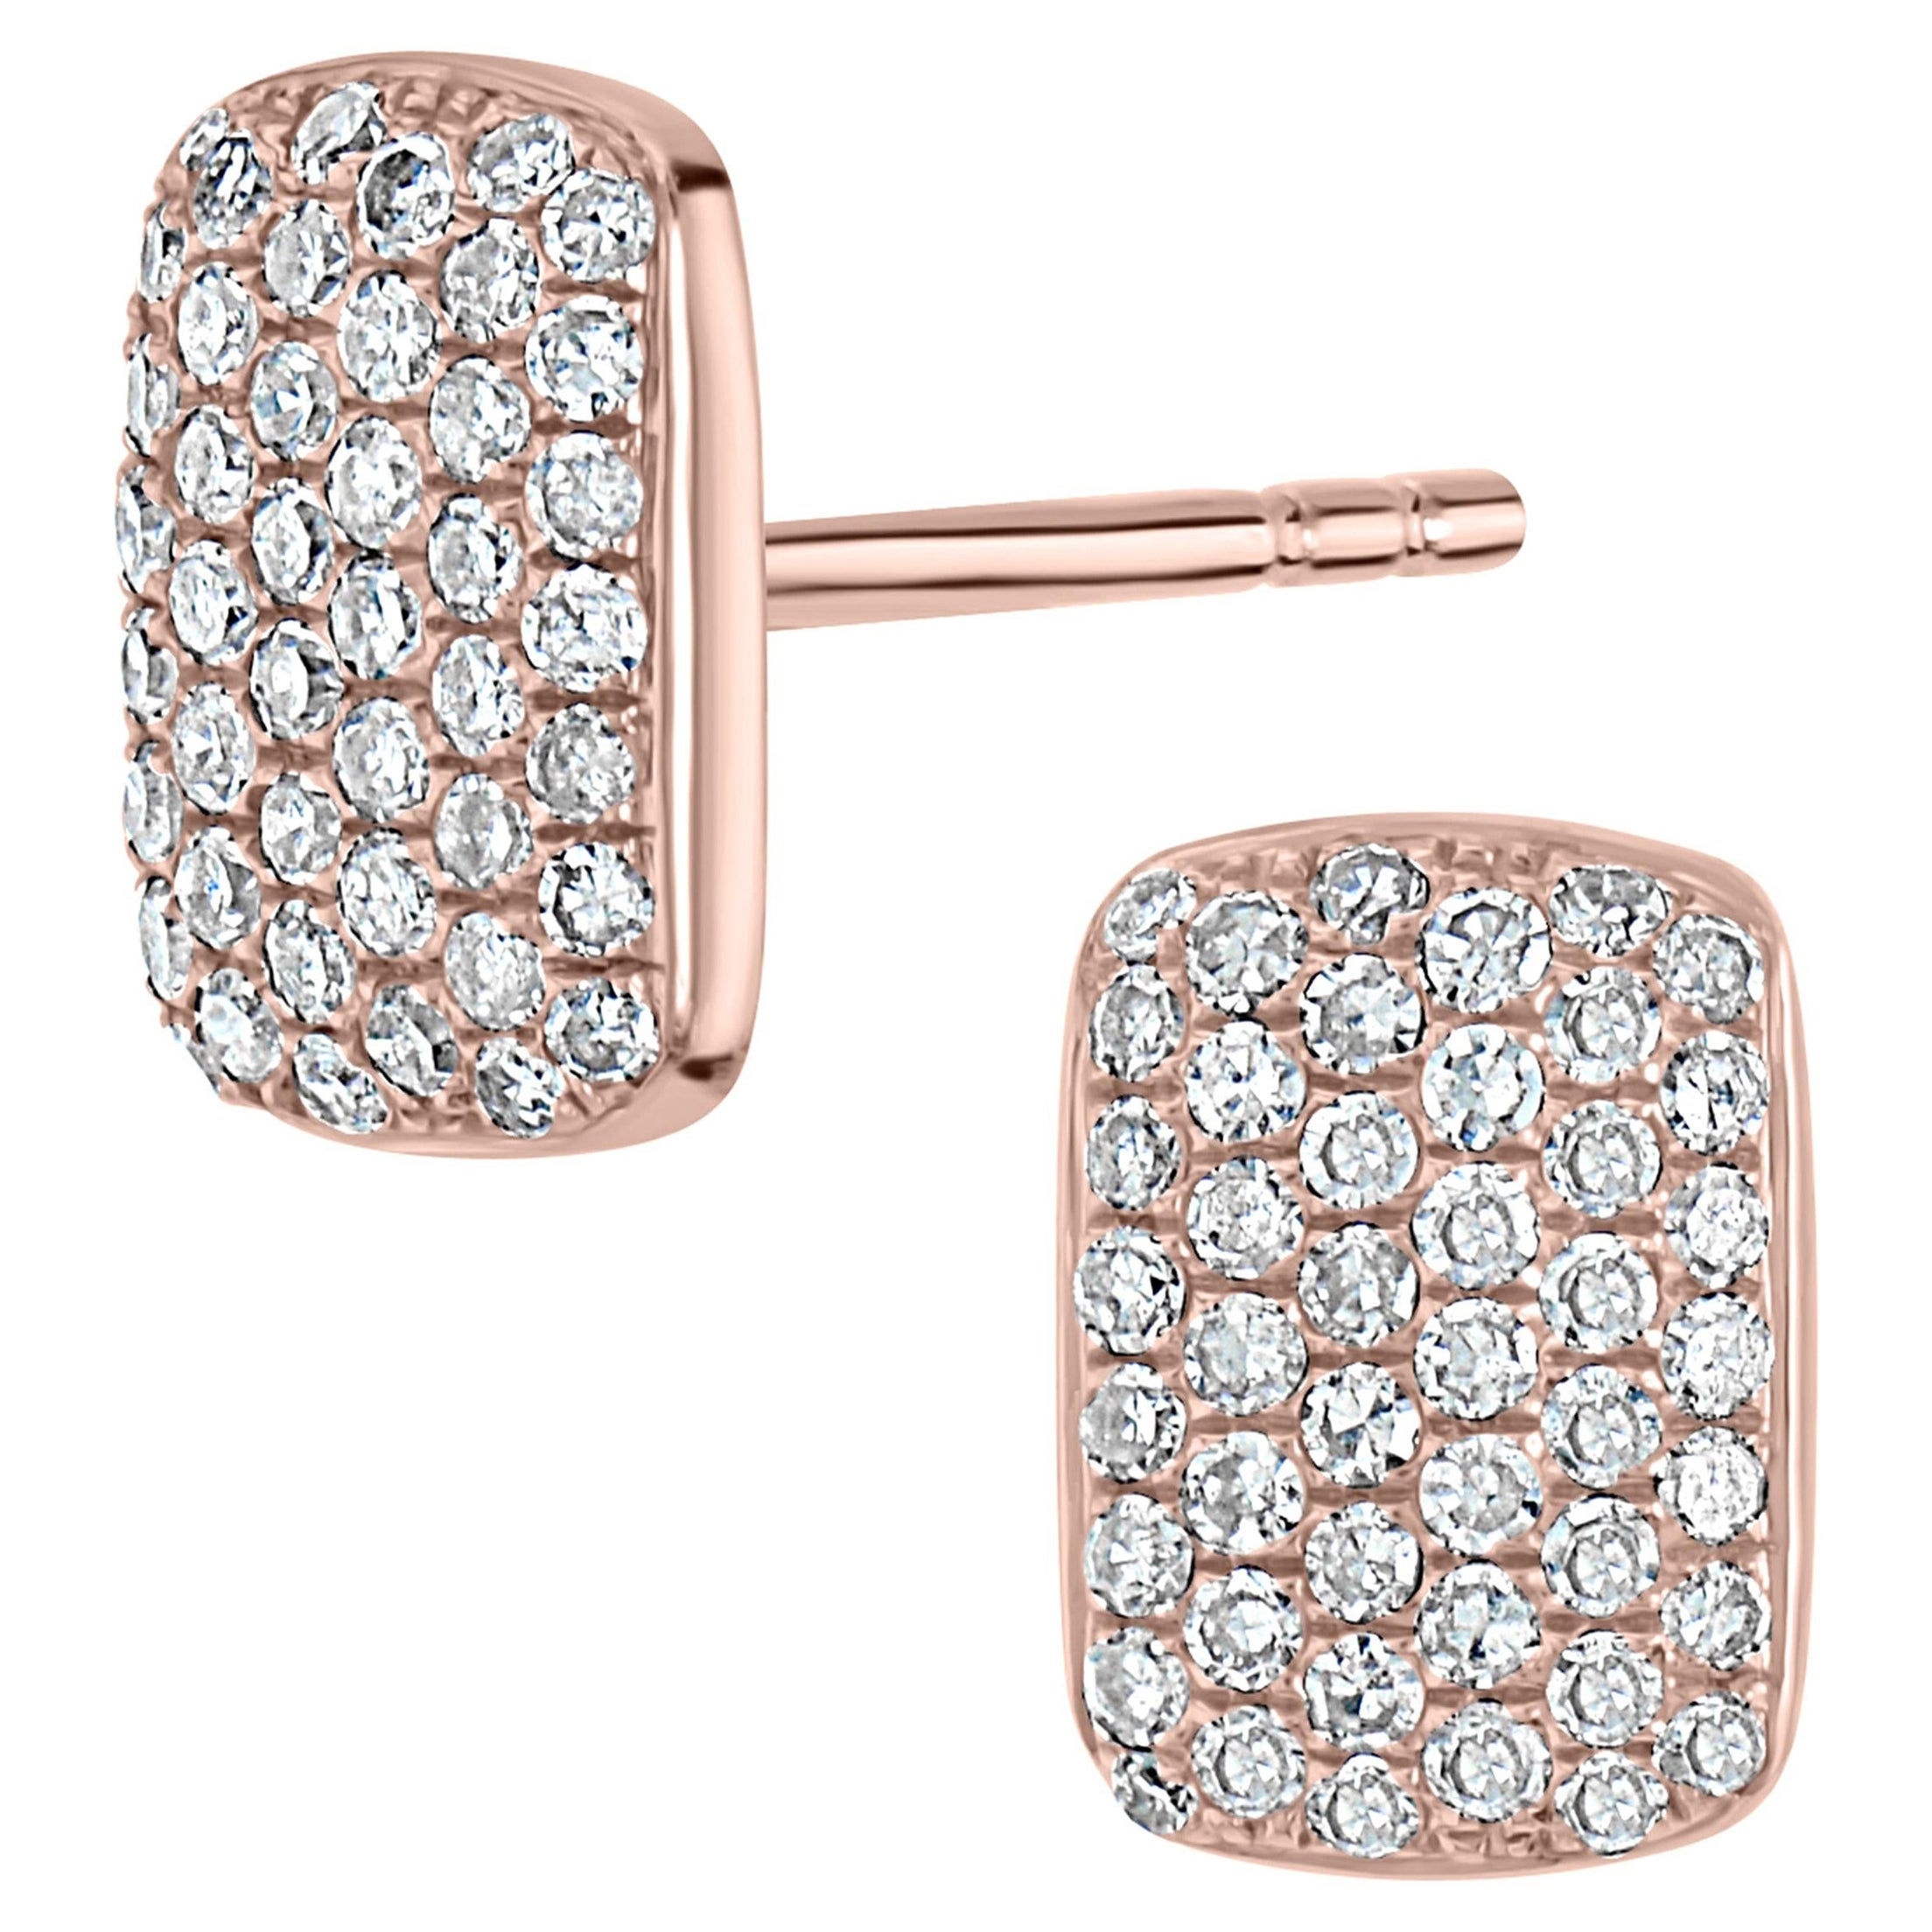 Luxle Diamond Stud Earring in 14 Karat Rose Gold